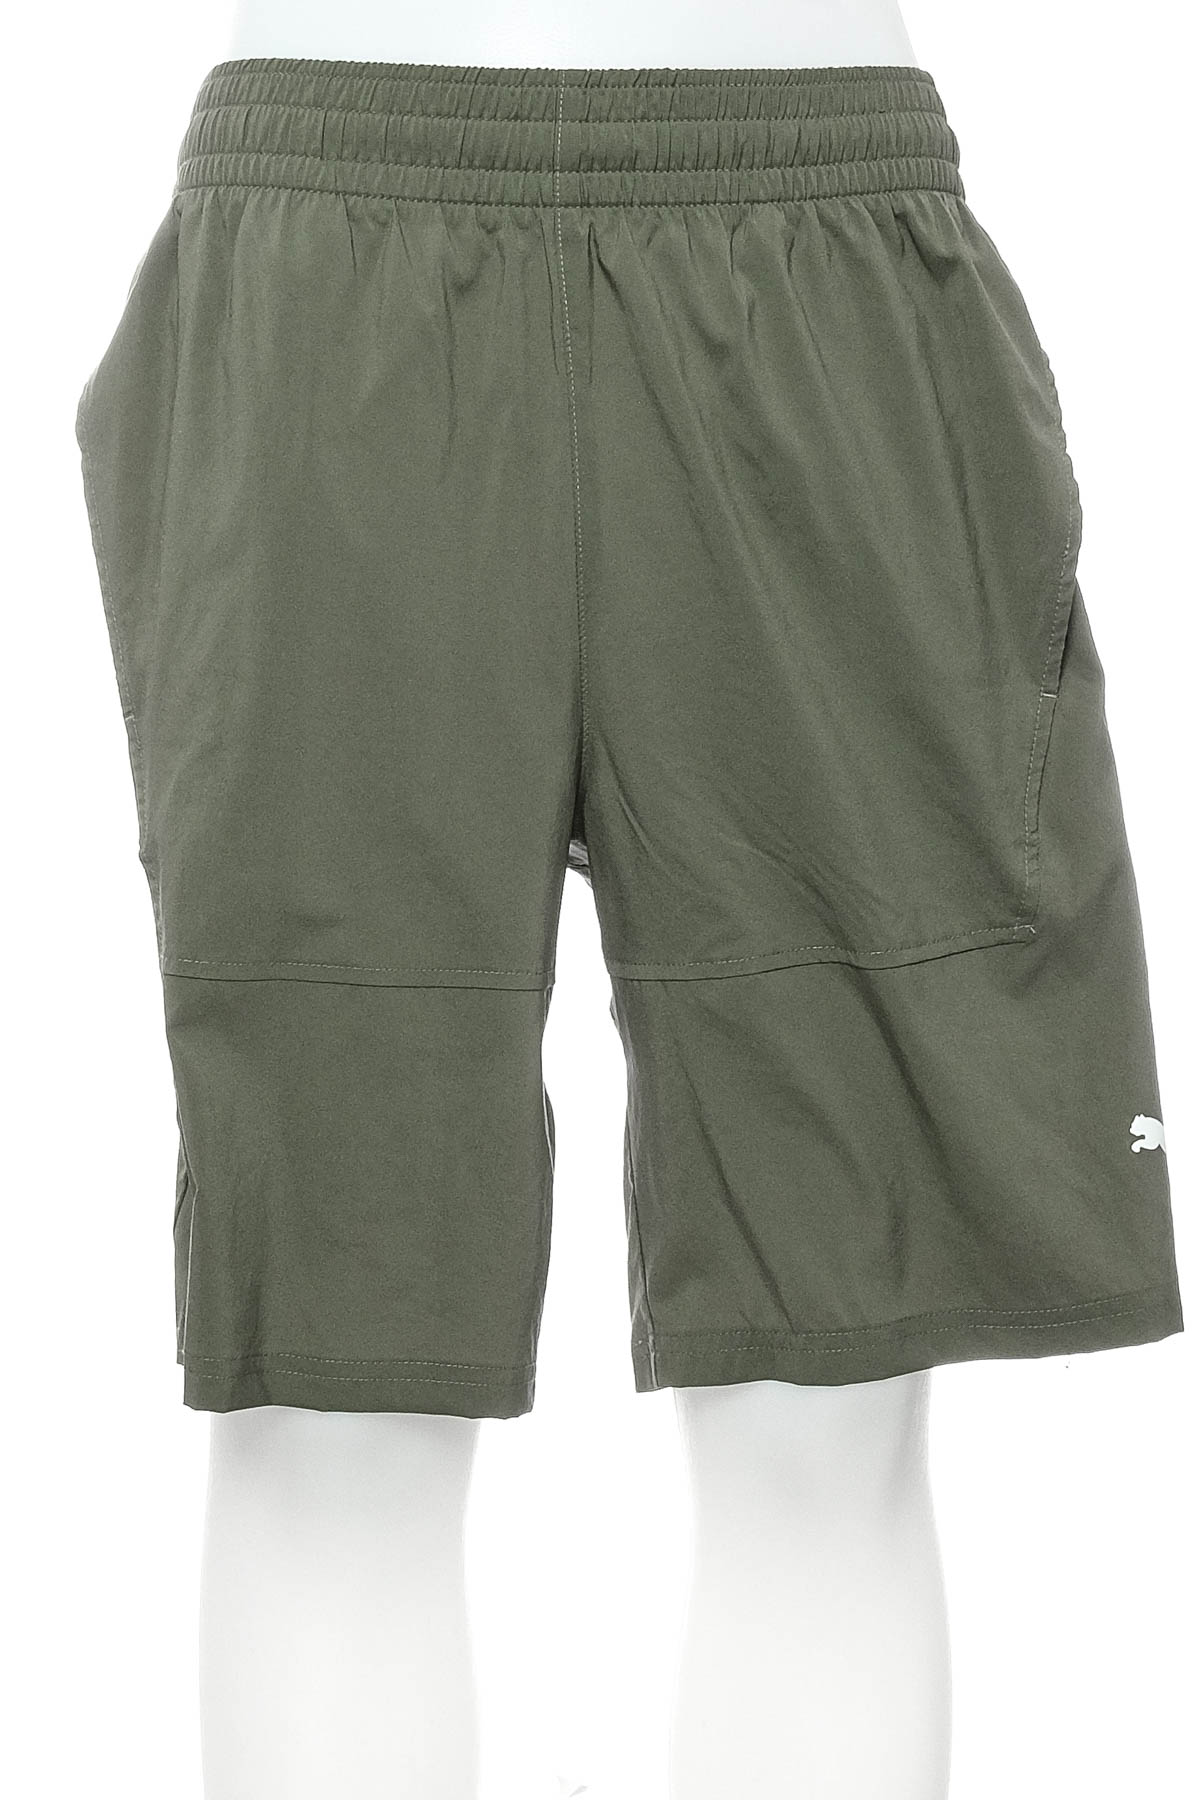 Men's shorts - Puma - 0